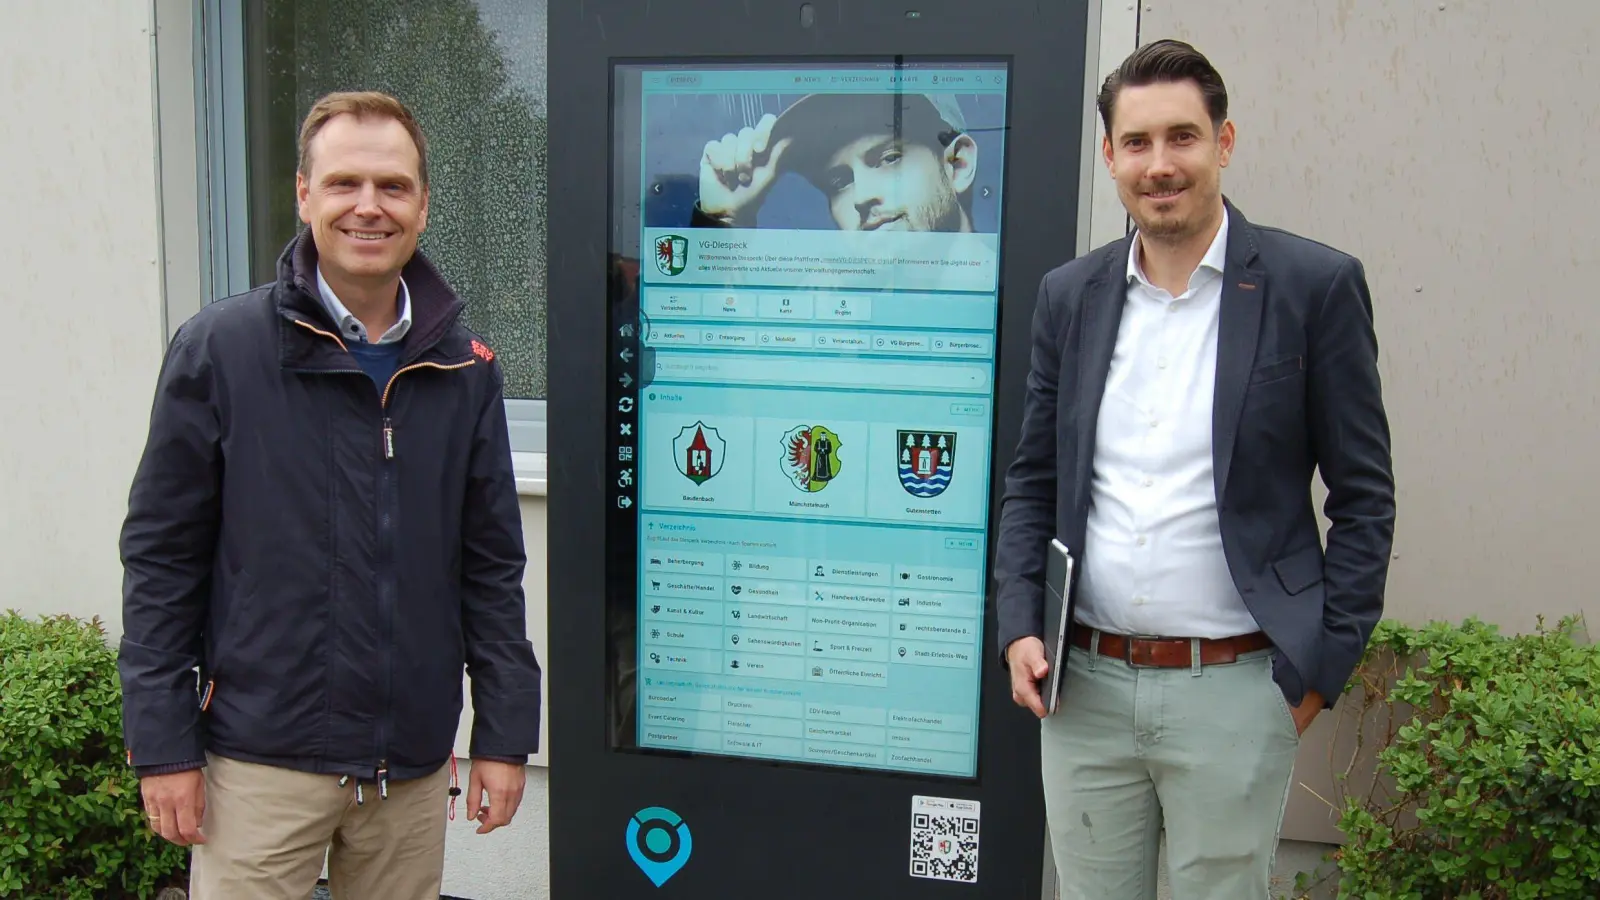 Diespecks Bürgermeister Dr. Christian von Dobschütz (links) und Kevin Dax, Geschäftsführer der P&amp;P-Digitalisierungs-GmbH, präsentieren das Touchscreen-Infoterminal am Sport- und Gemeindezentrum. (Foto: Christa Frühwald)